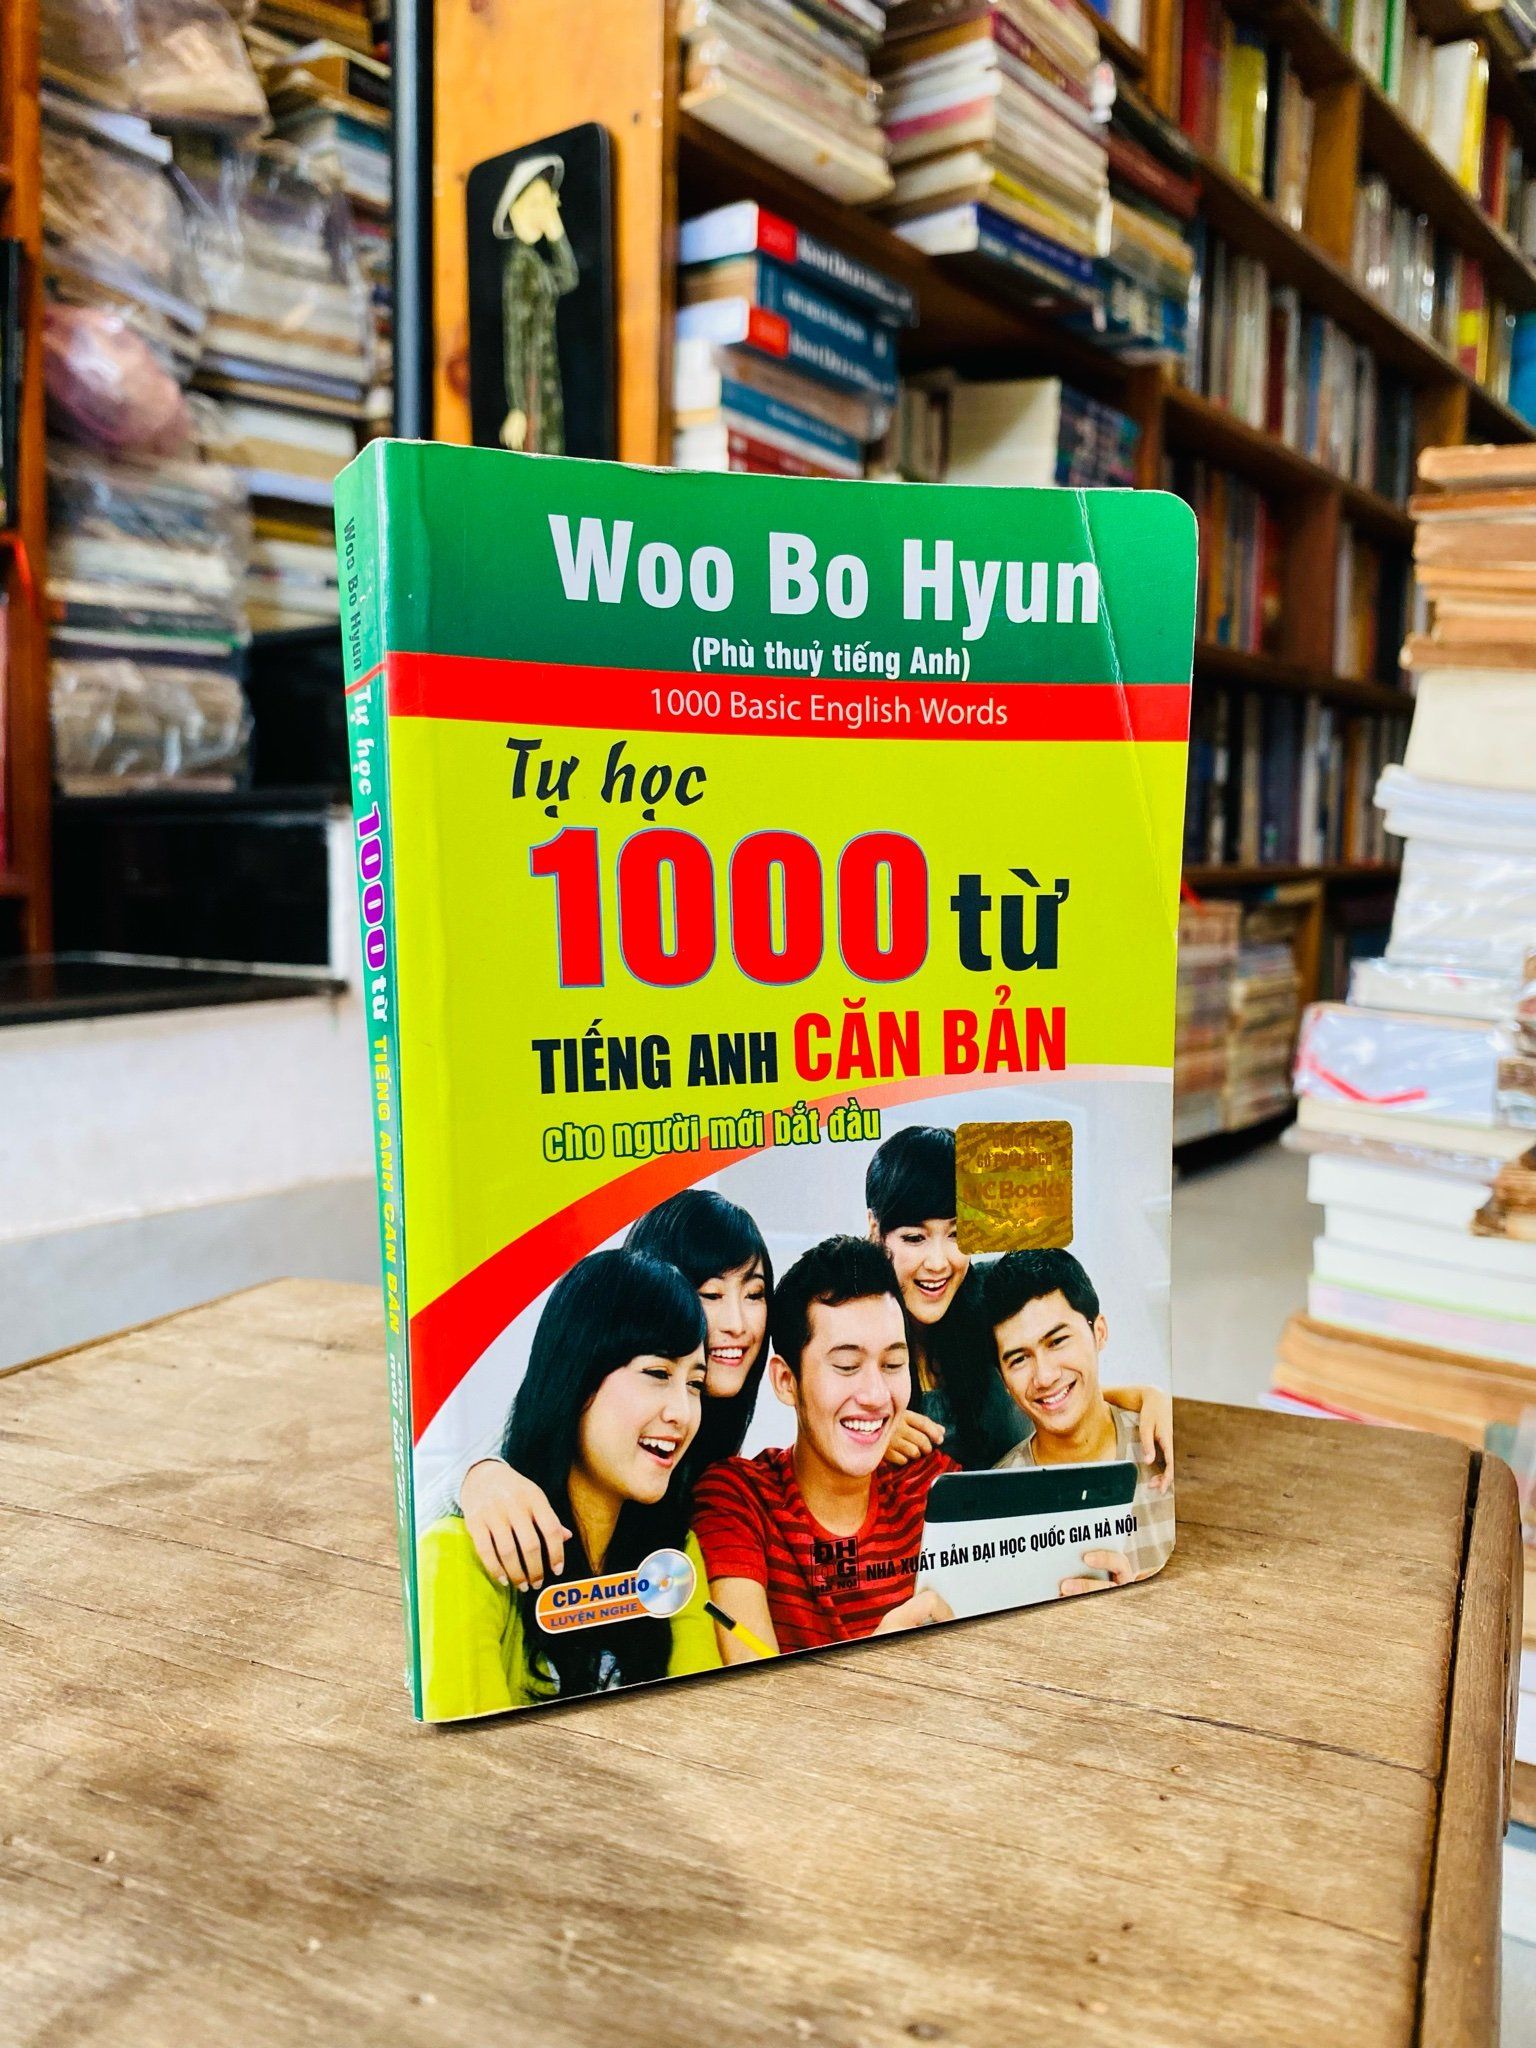  Tự học 1000 từ tiếng Anh căn bản - Woo Bo Hyun 